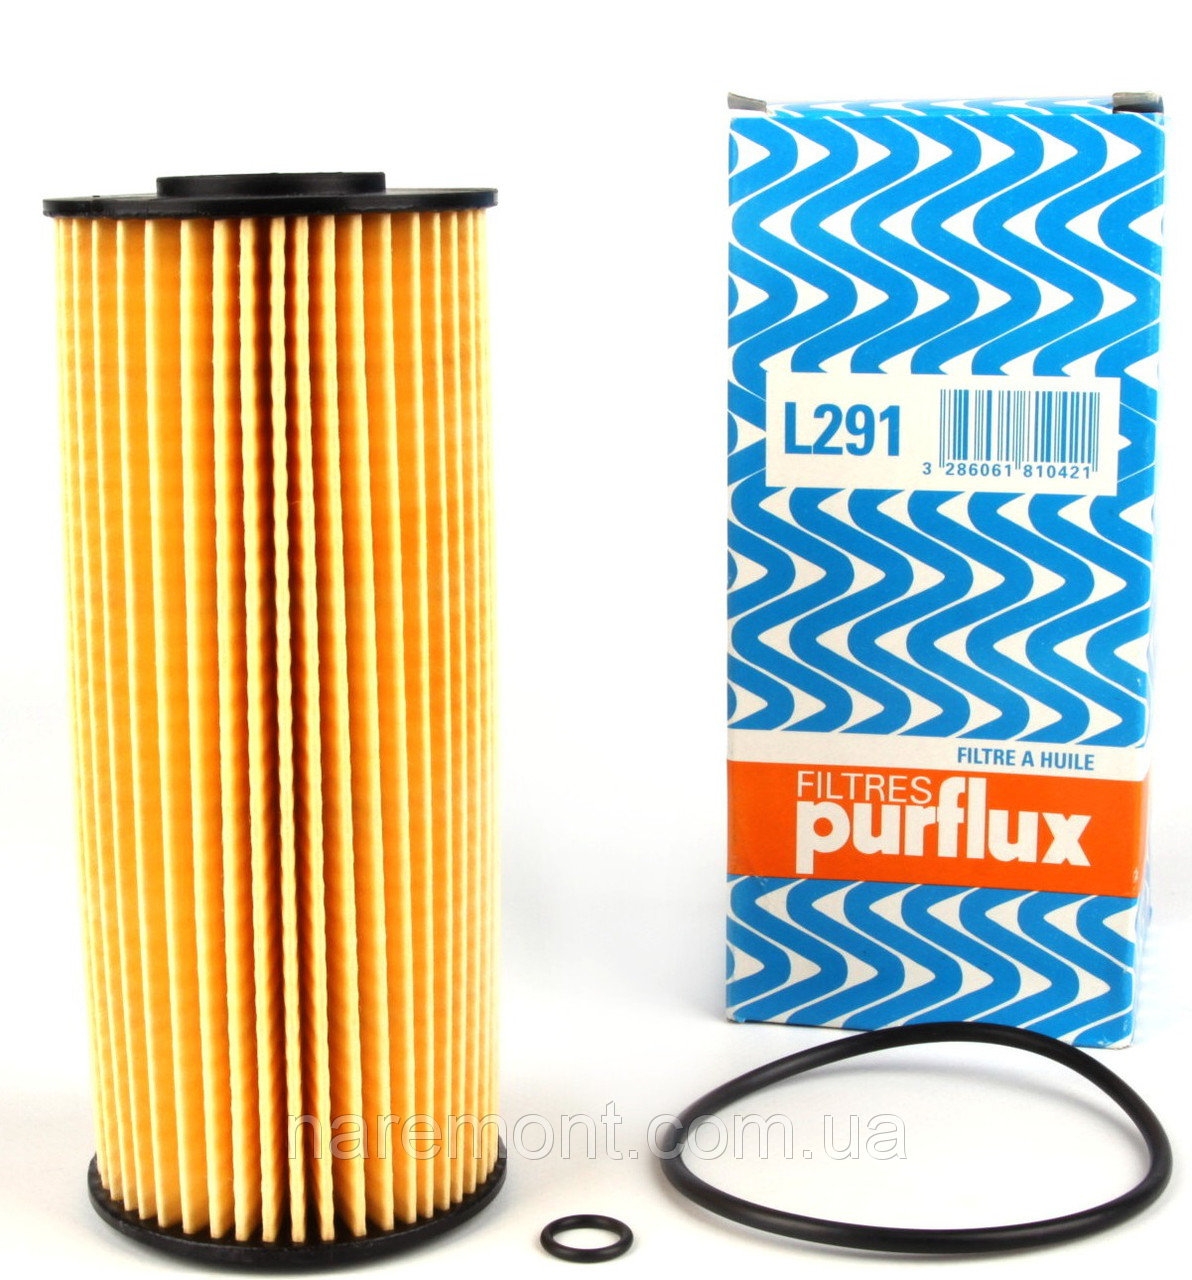 L291 фильтр масляный Purflux